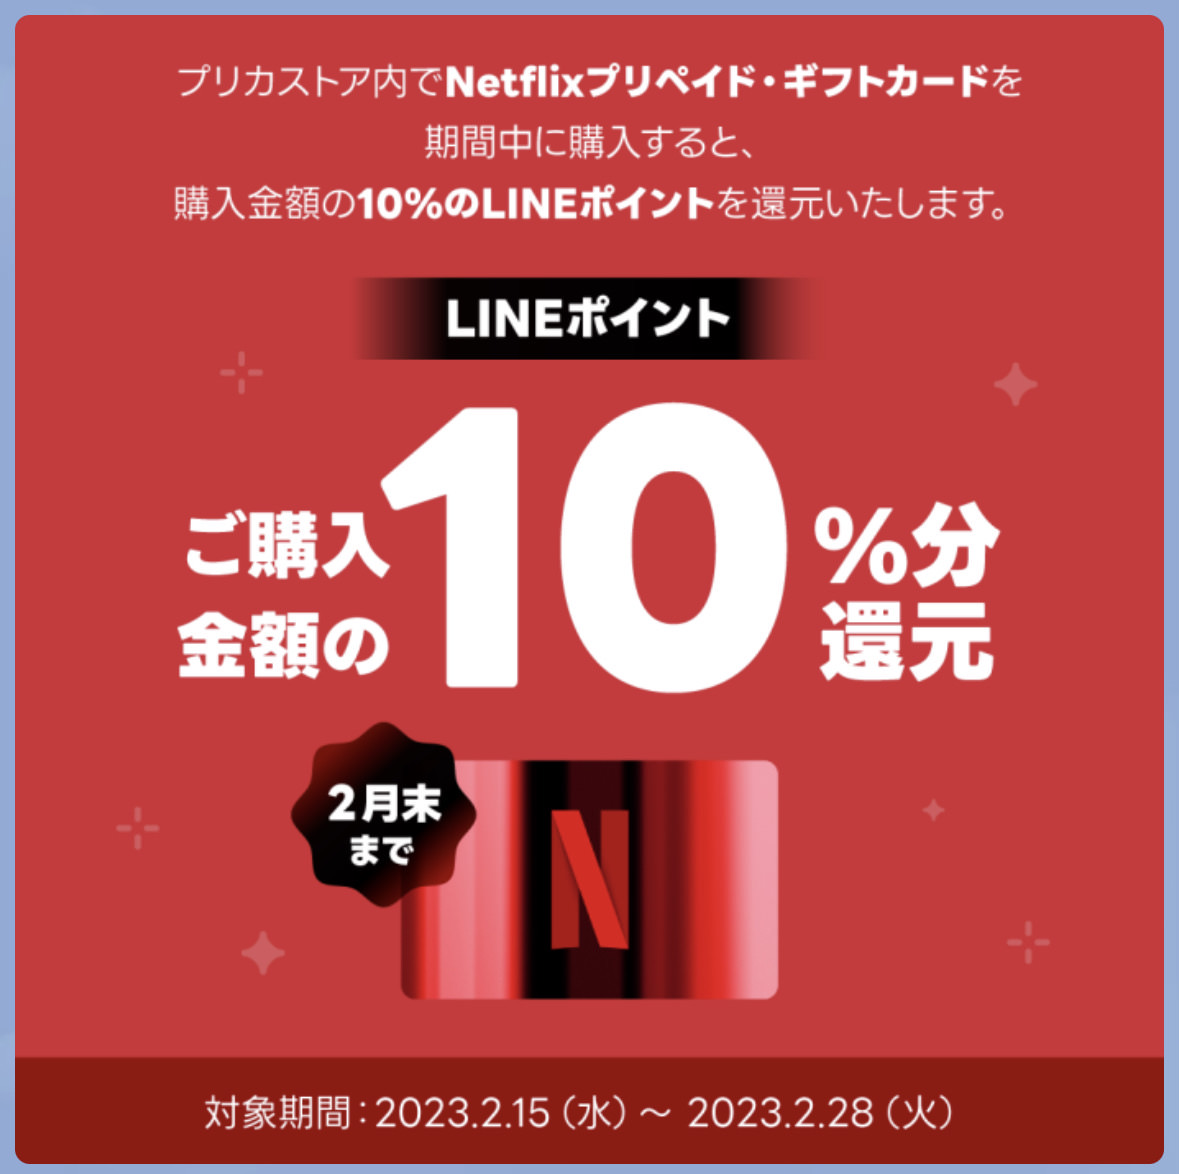 Line netflix 10